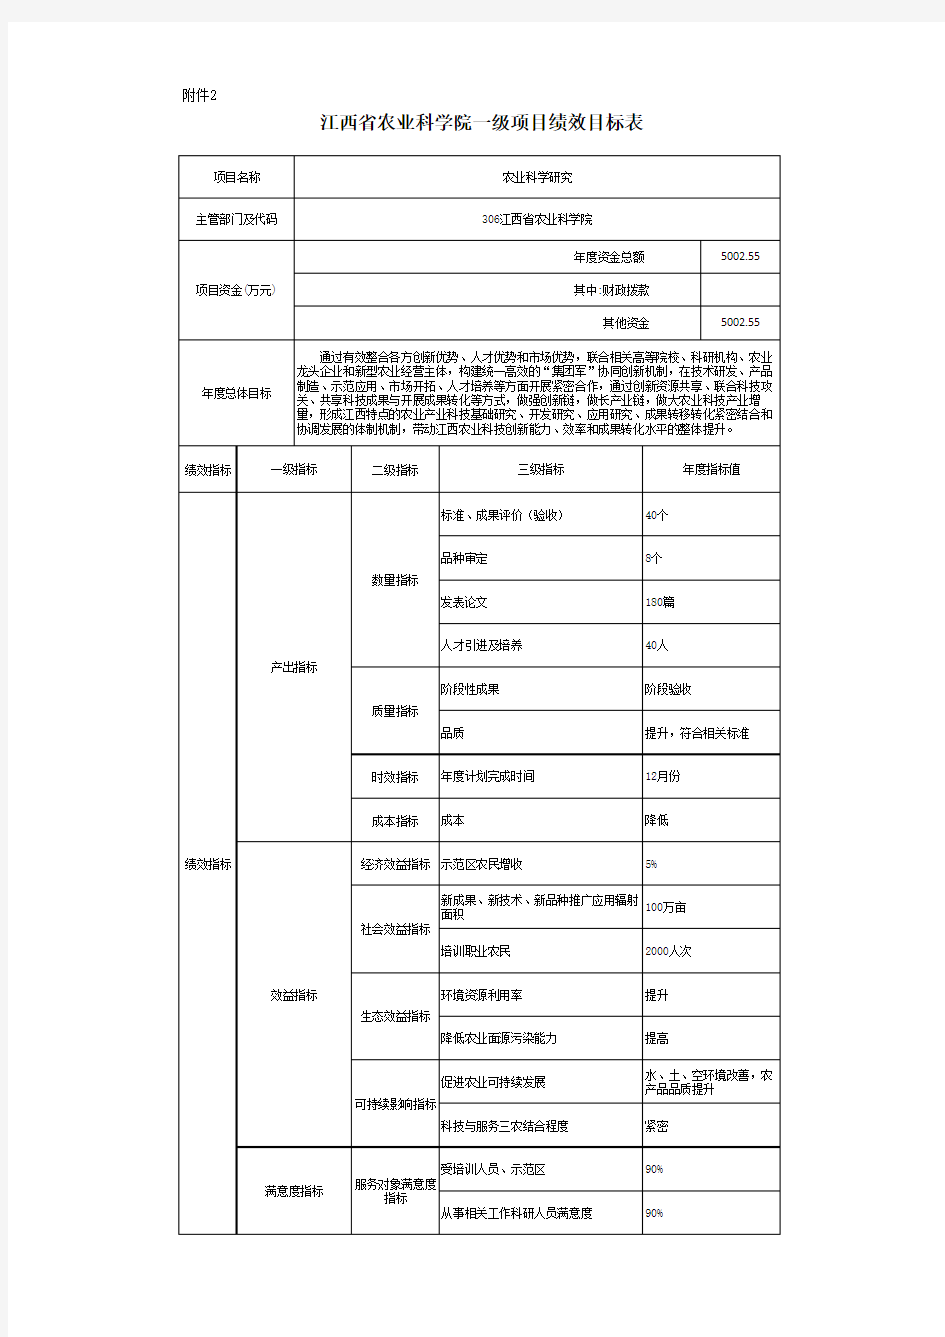 江西省农业科学院一级项目绩效目标表